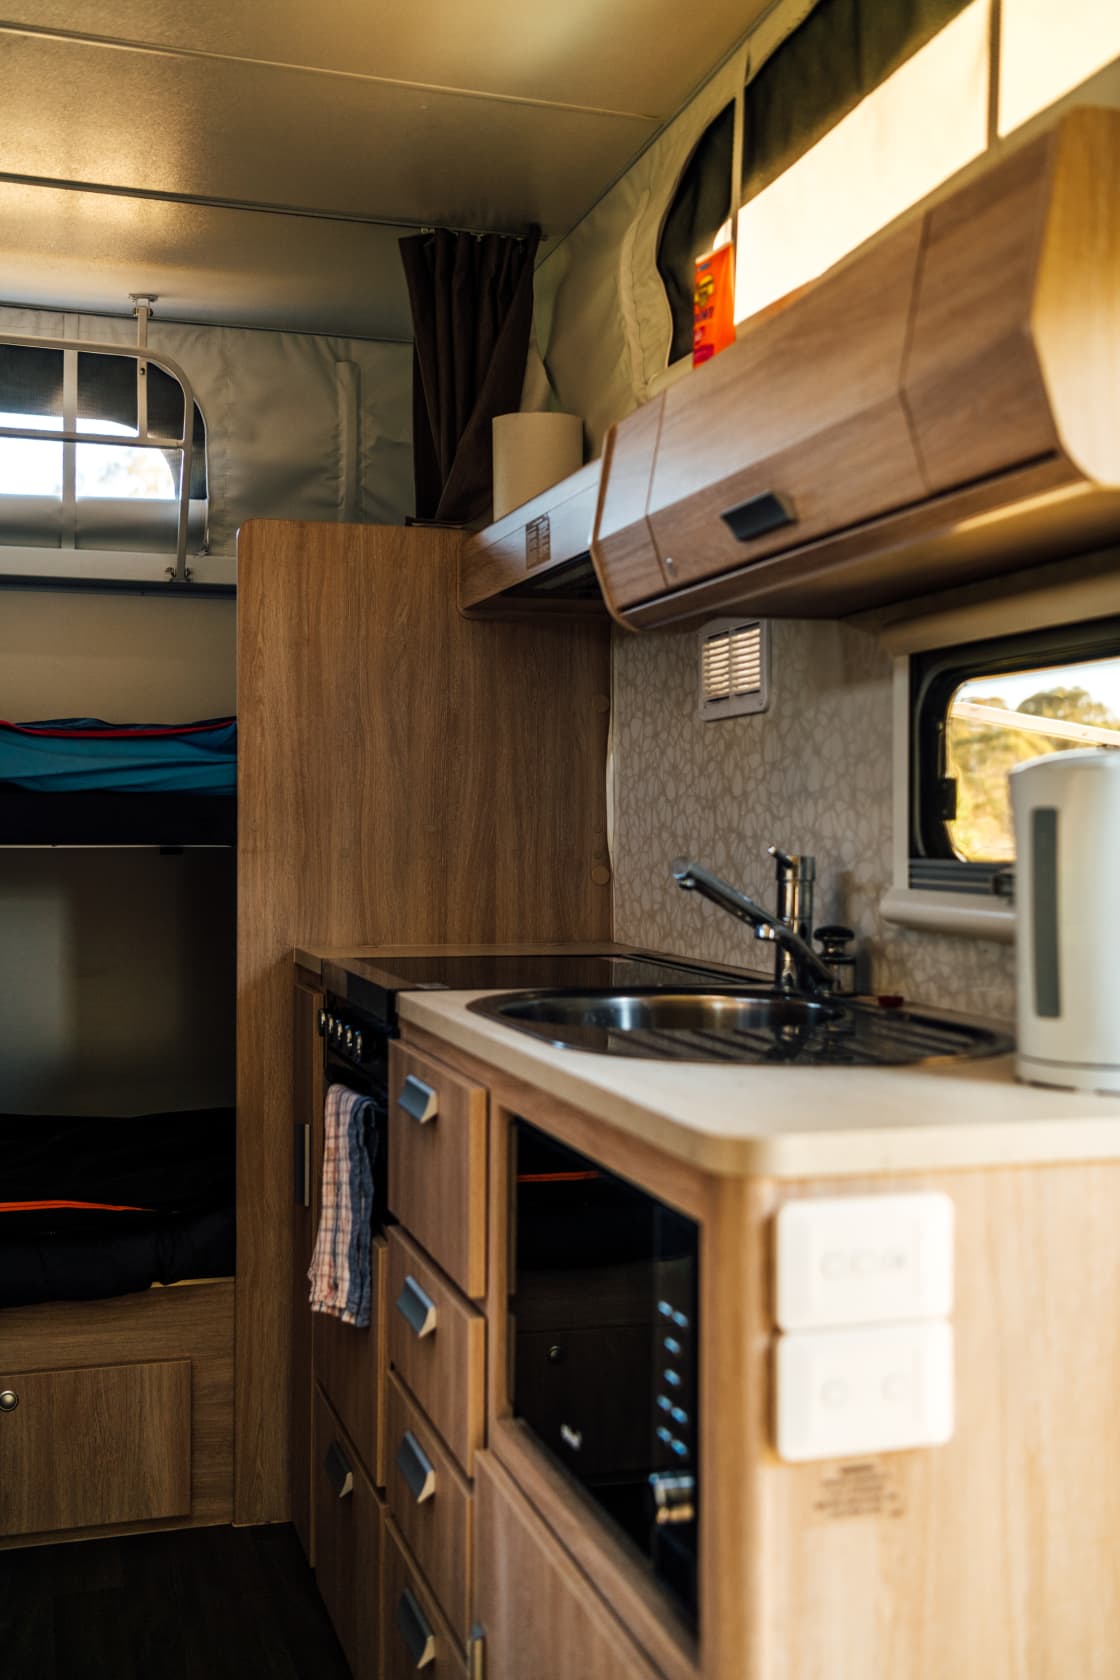 Full kitchen inside the caravan! 